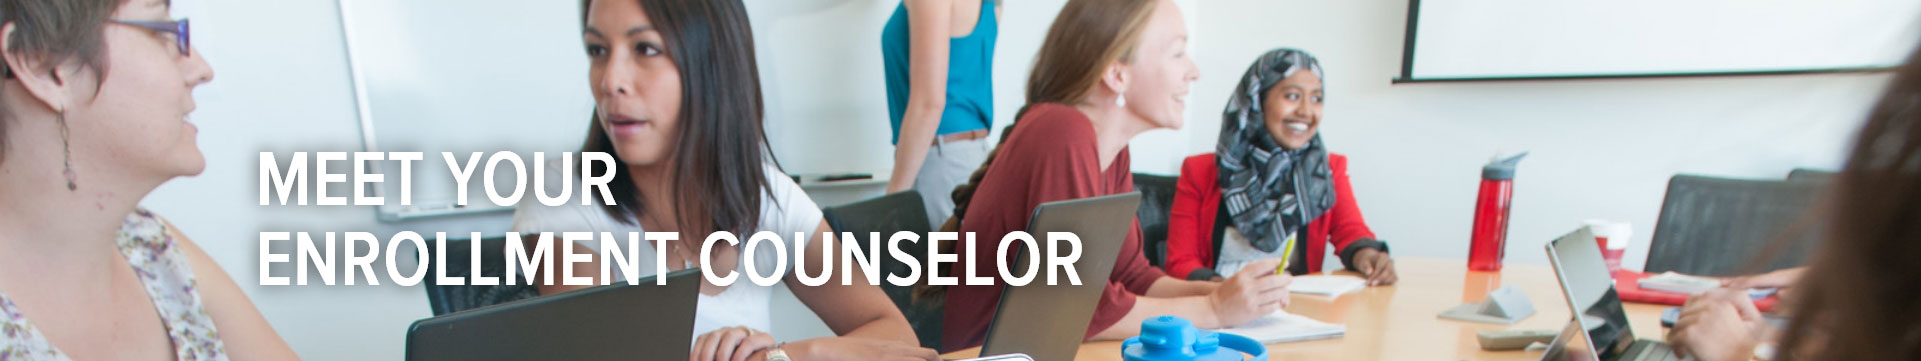 Meet Your Enrollment Counselor